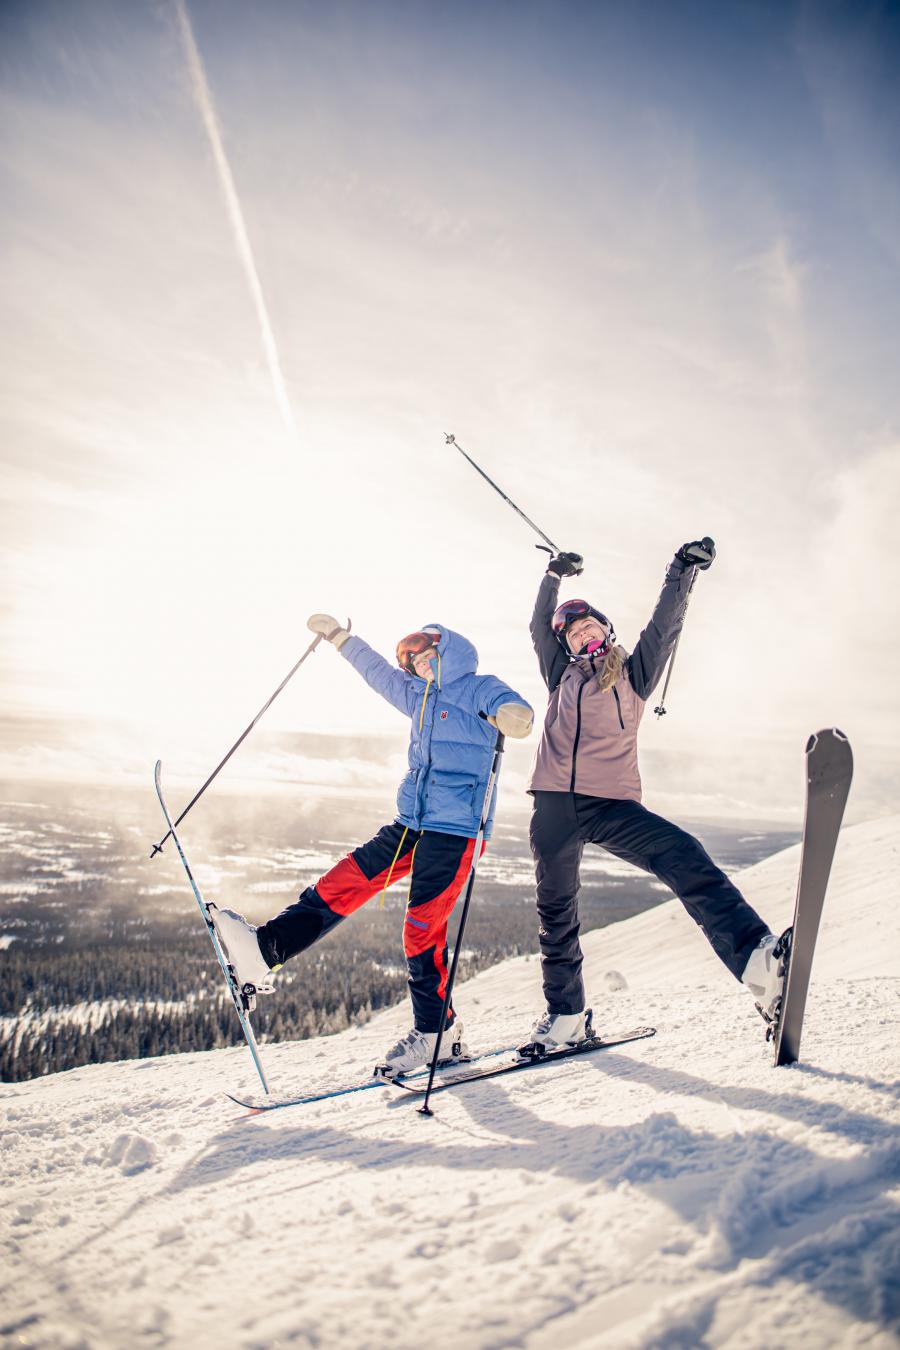 To mennesker på ski poserer for kameraet i et snelandskab